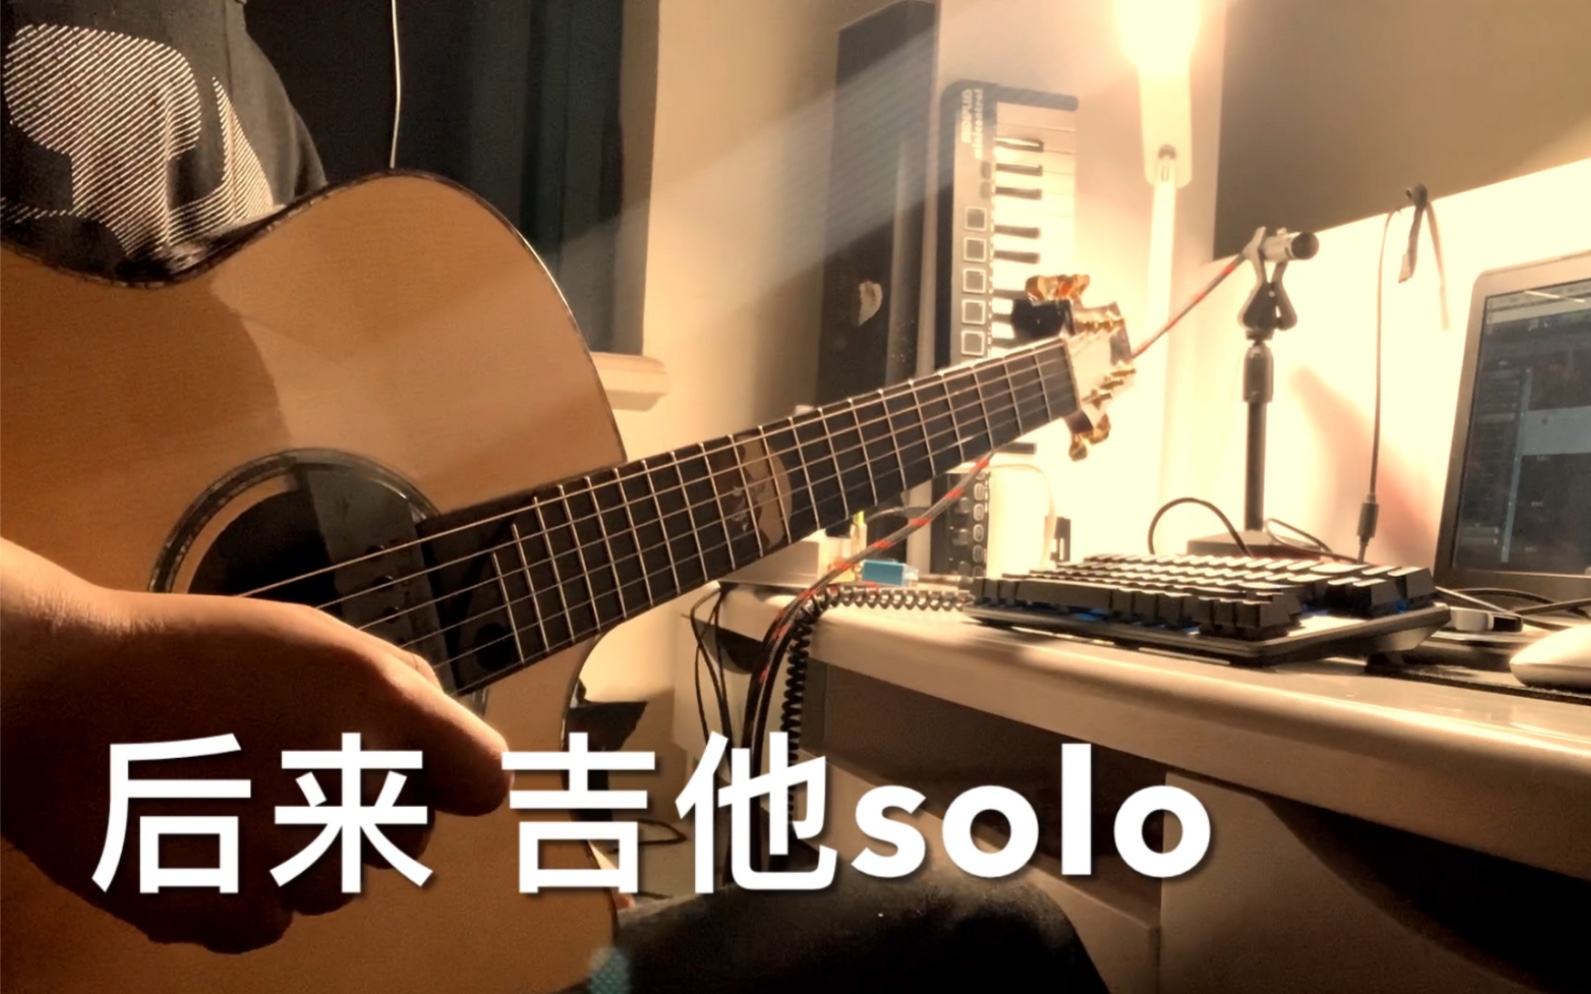 【吉他solo】《后来》cover刘若英 “终于在眼泪中明白，有些人一旦错过就不再。”